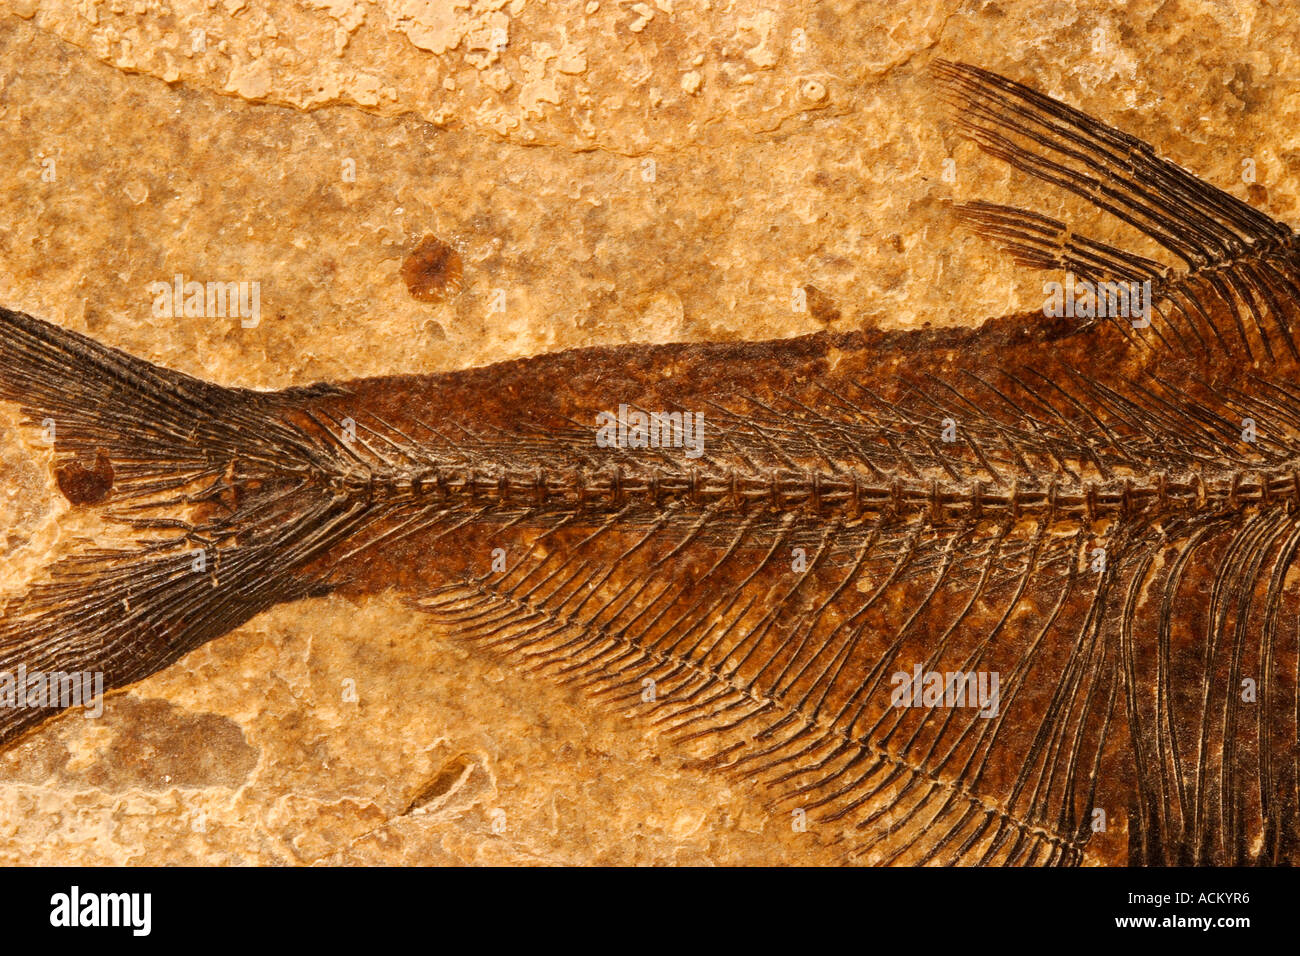 Détail d'un poisson fossile sur un fond en grès texturé Banque D'Images